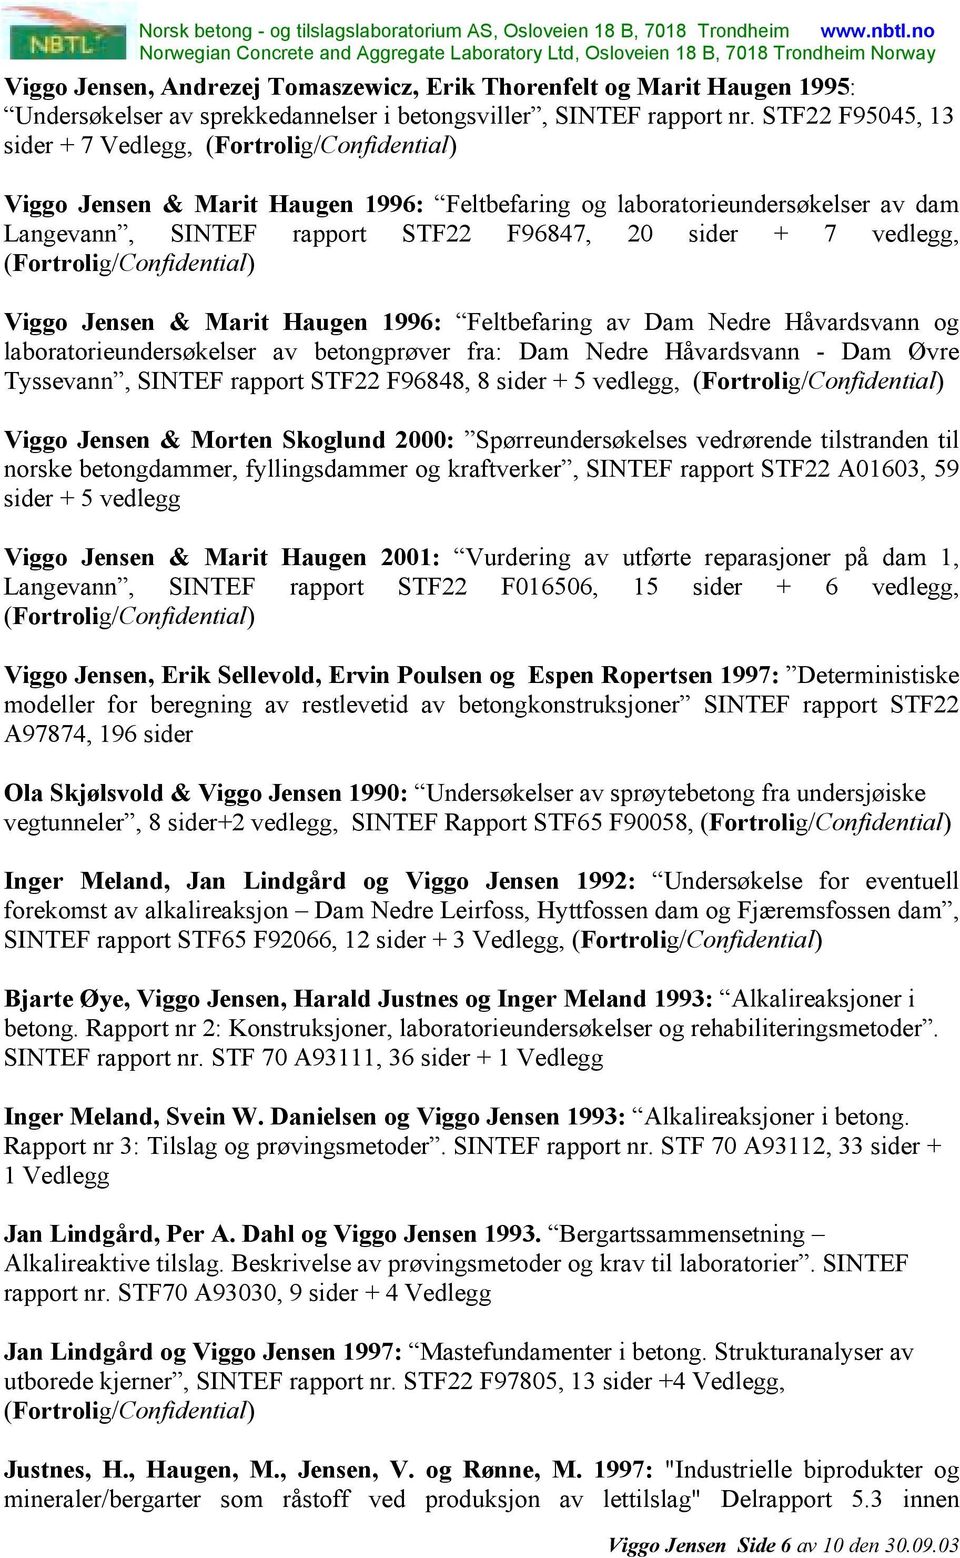 Marit Haugen 1996: Feltbefaring av Dam Nedre Håvardsvann og laboratorieundersøkelser av betongprøver fra: Dam Nedre Håvardsvann - Dam Øvre Tyssevann, SINTEF rapport STF22 F96848, 8 sider + 5 vedlegg,